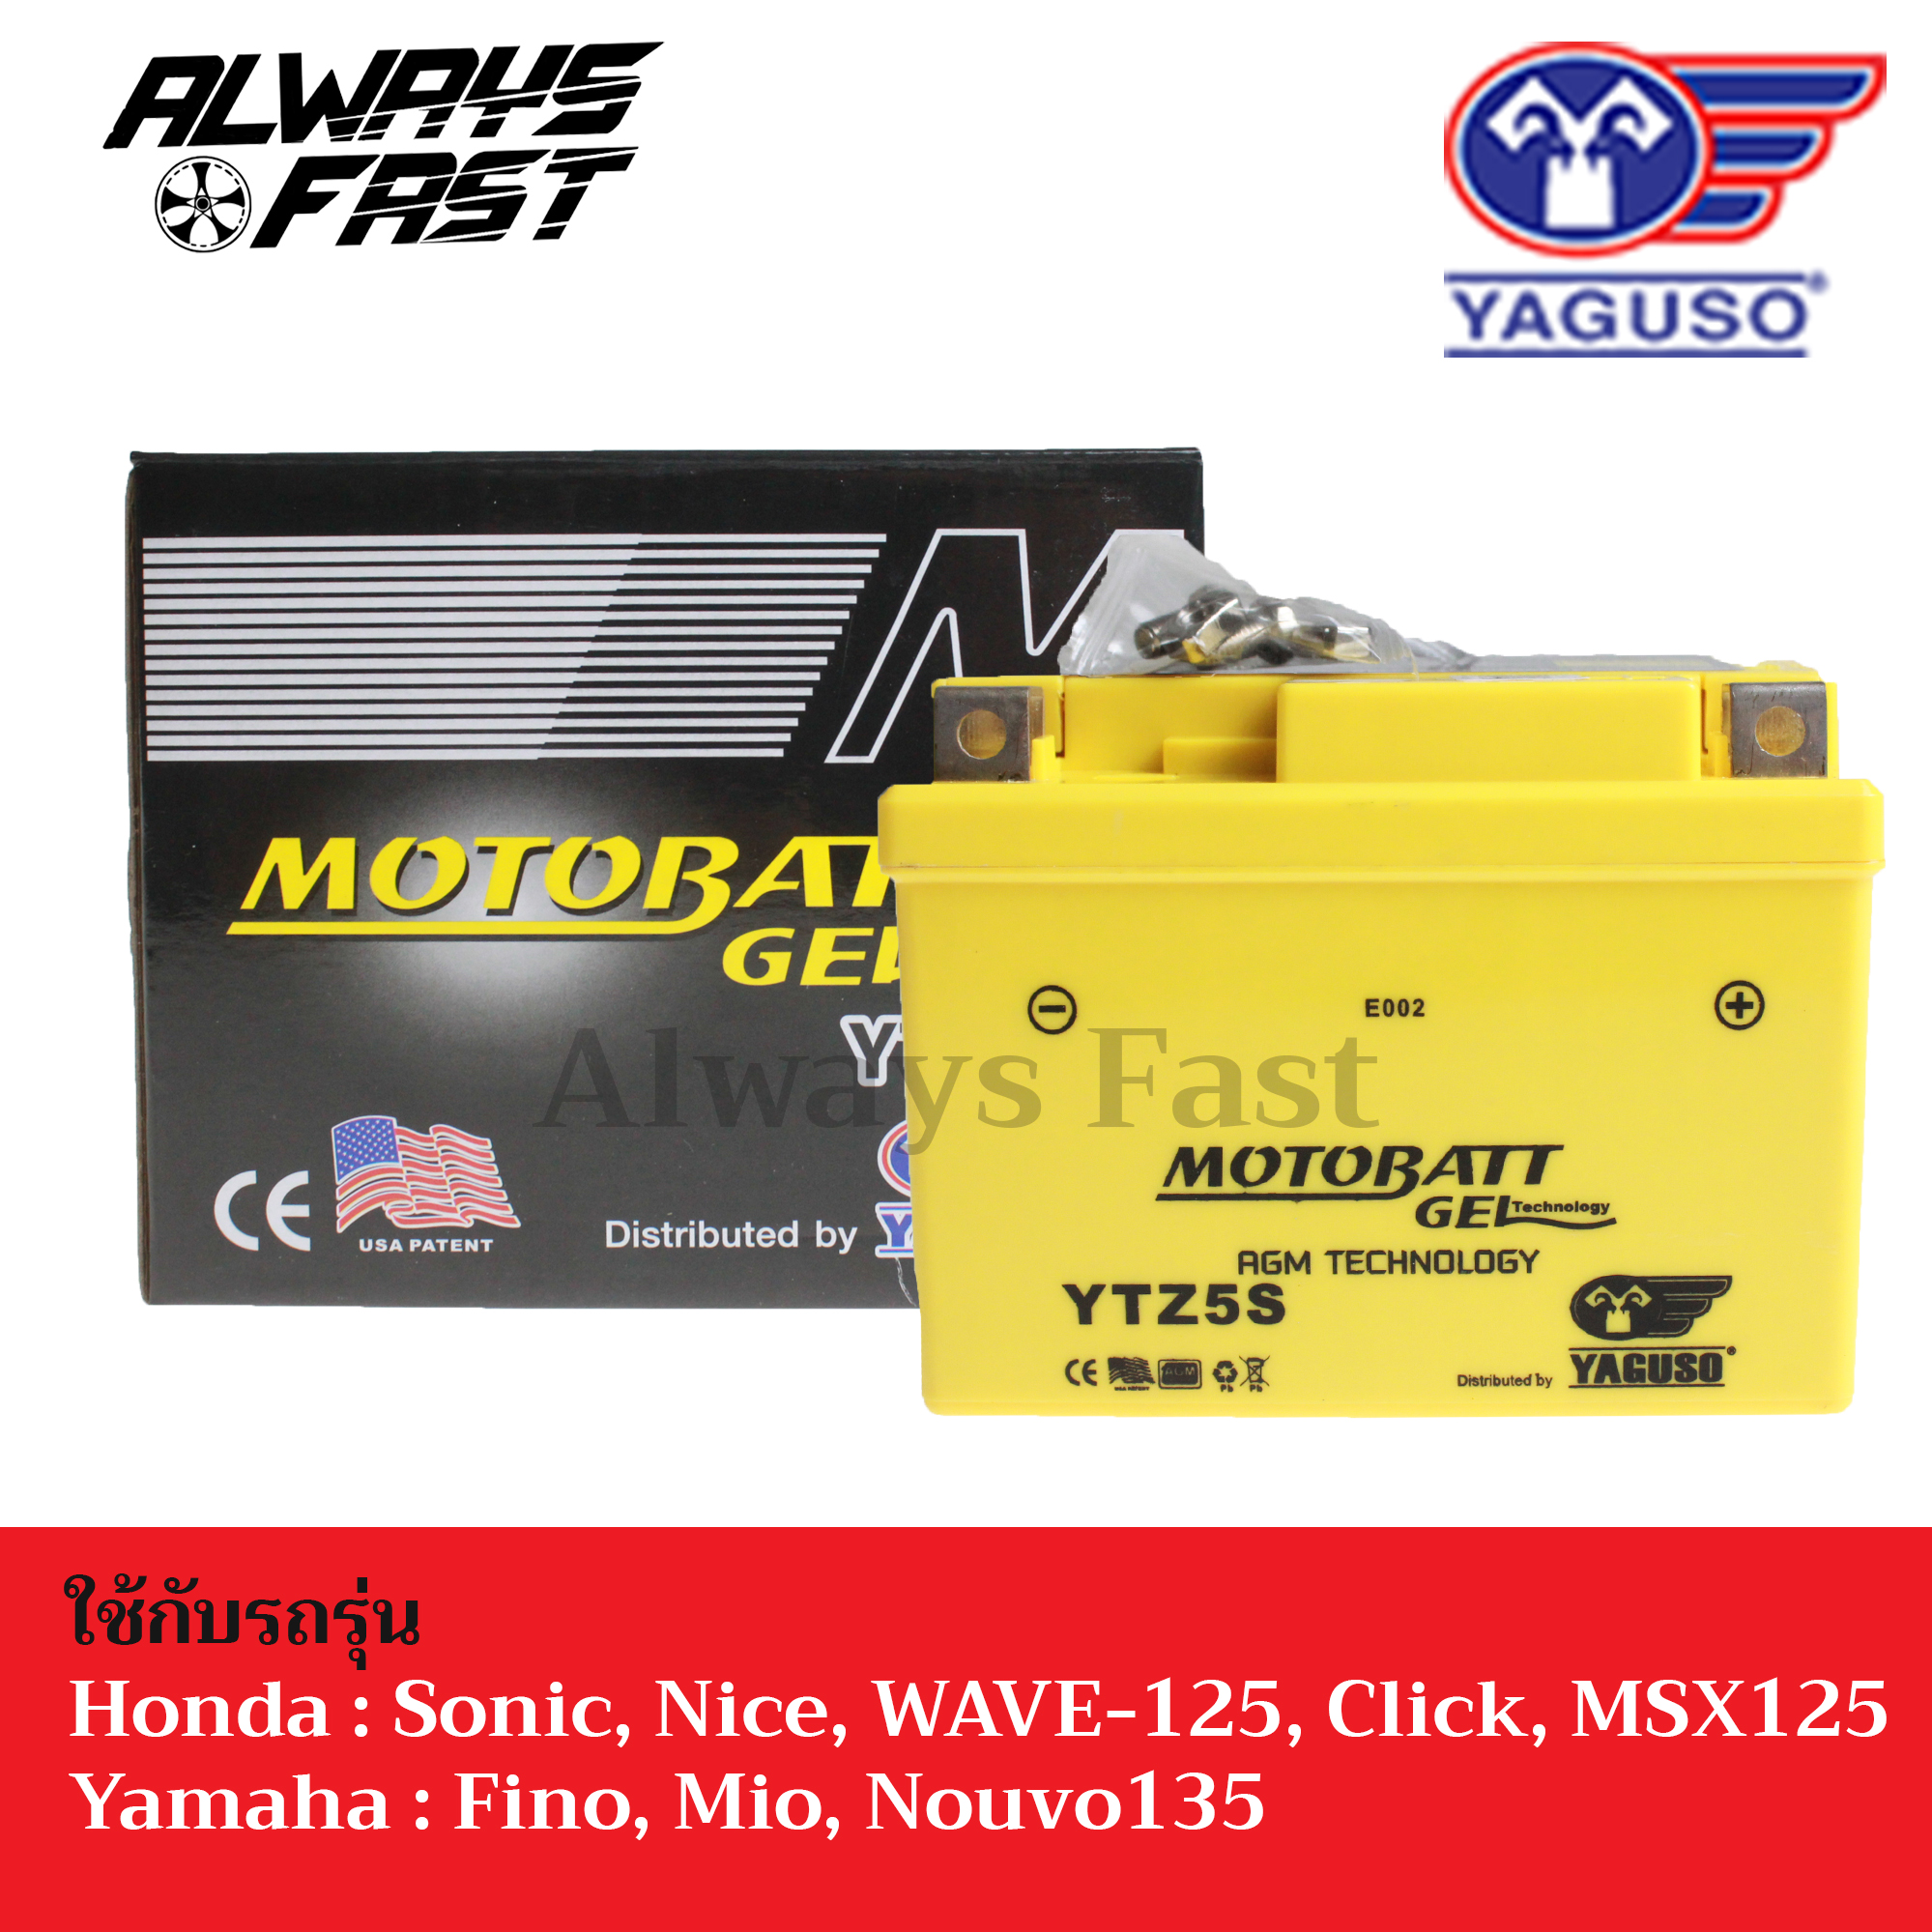 ส่งด่วน!! แบตเตอรี่ มอไซค์ Yaguso Motobatt Gel (YTZ5S) ใช้กับรถรุ่น Honda CBR,Wave,MSX,Sonic,Fino,Mio,Nouvo ไฟแรง แบตอึด!! จากอเมริกา